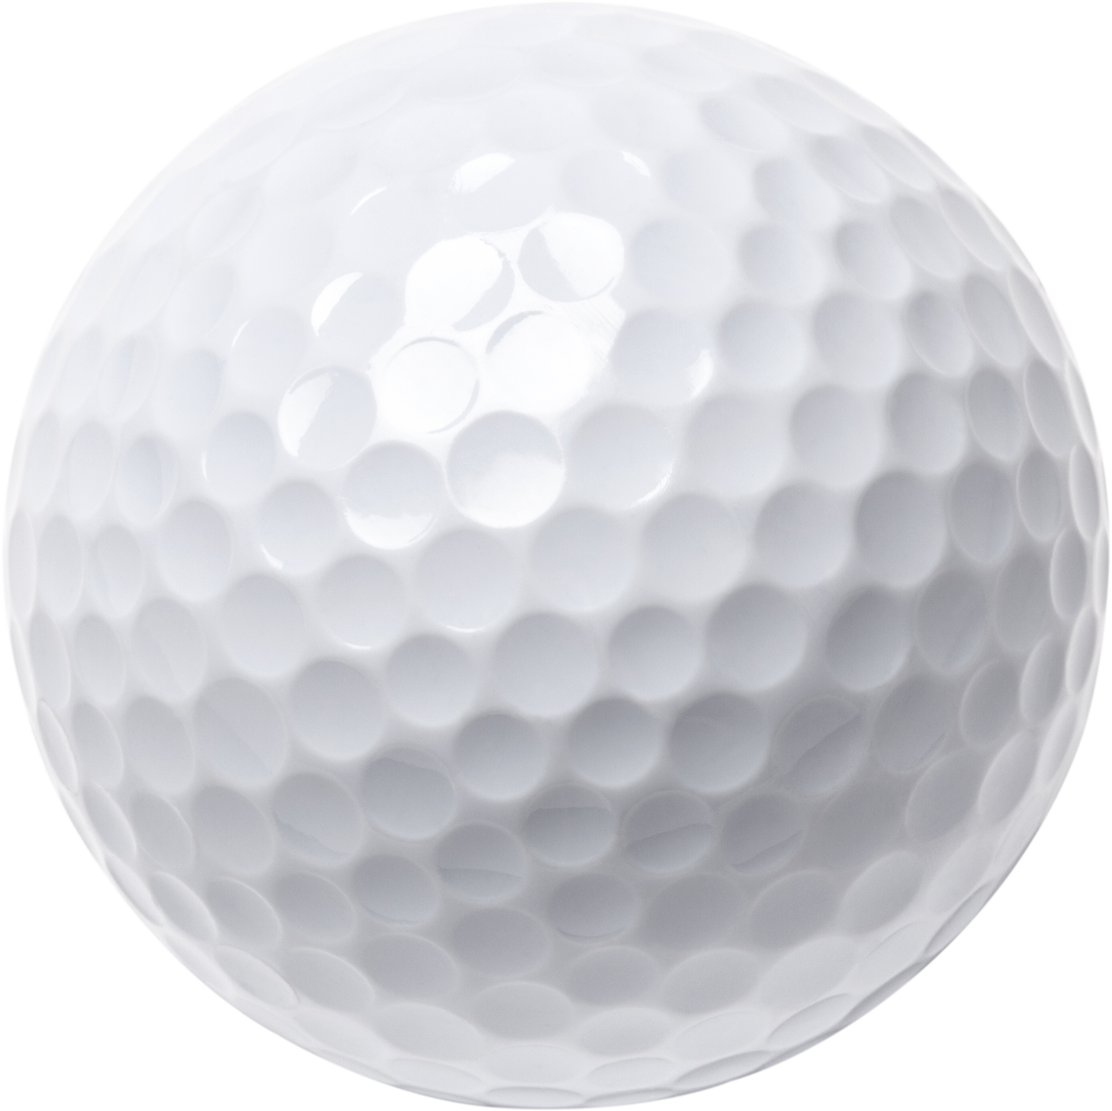 White Golf Ball Closeup Cutout